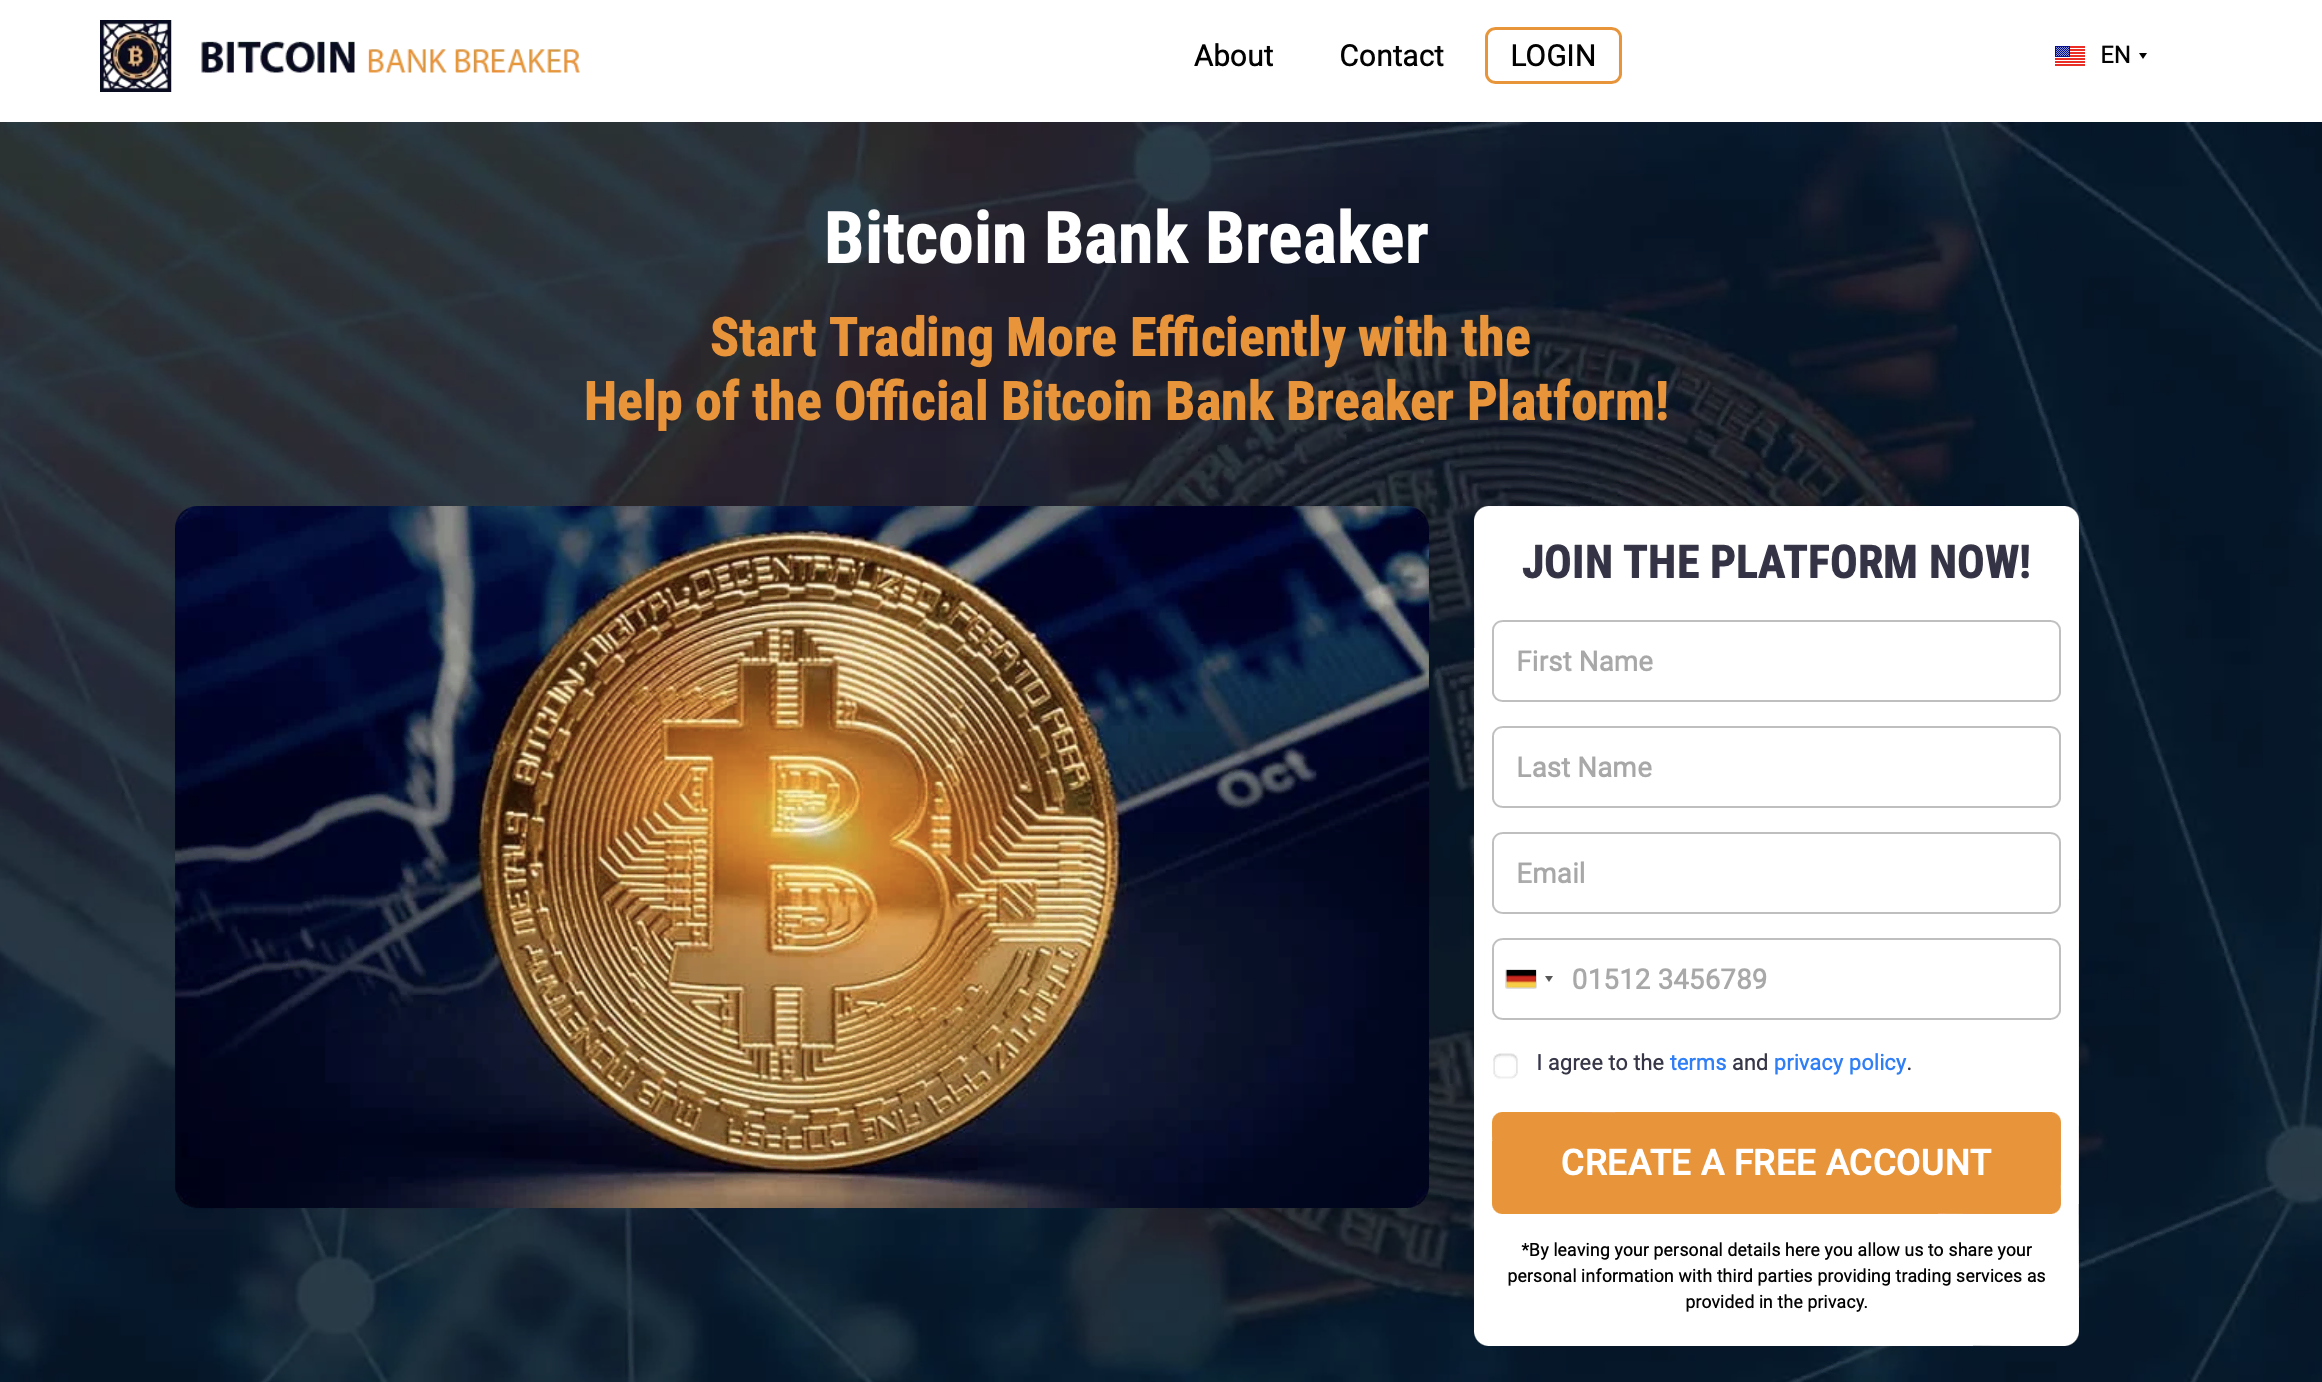 Η επίσημη ιστοσελίδα του Bitcoin Bank Breaker